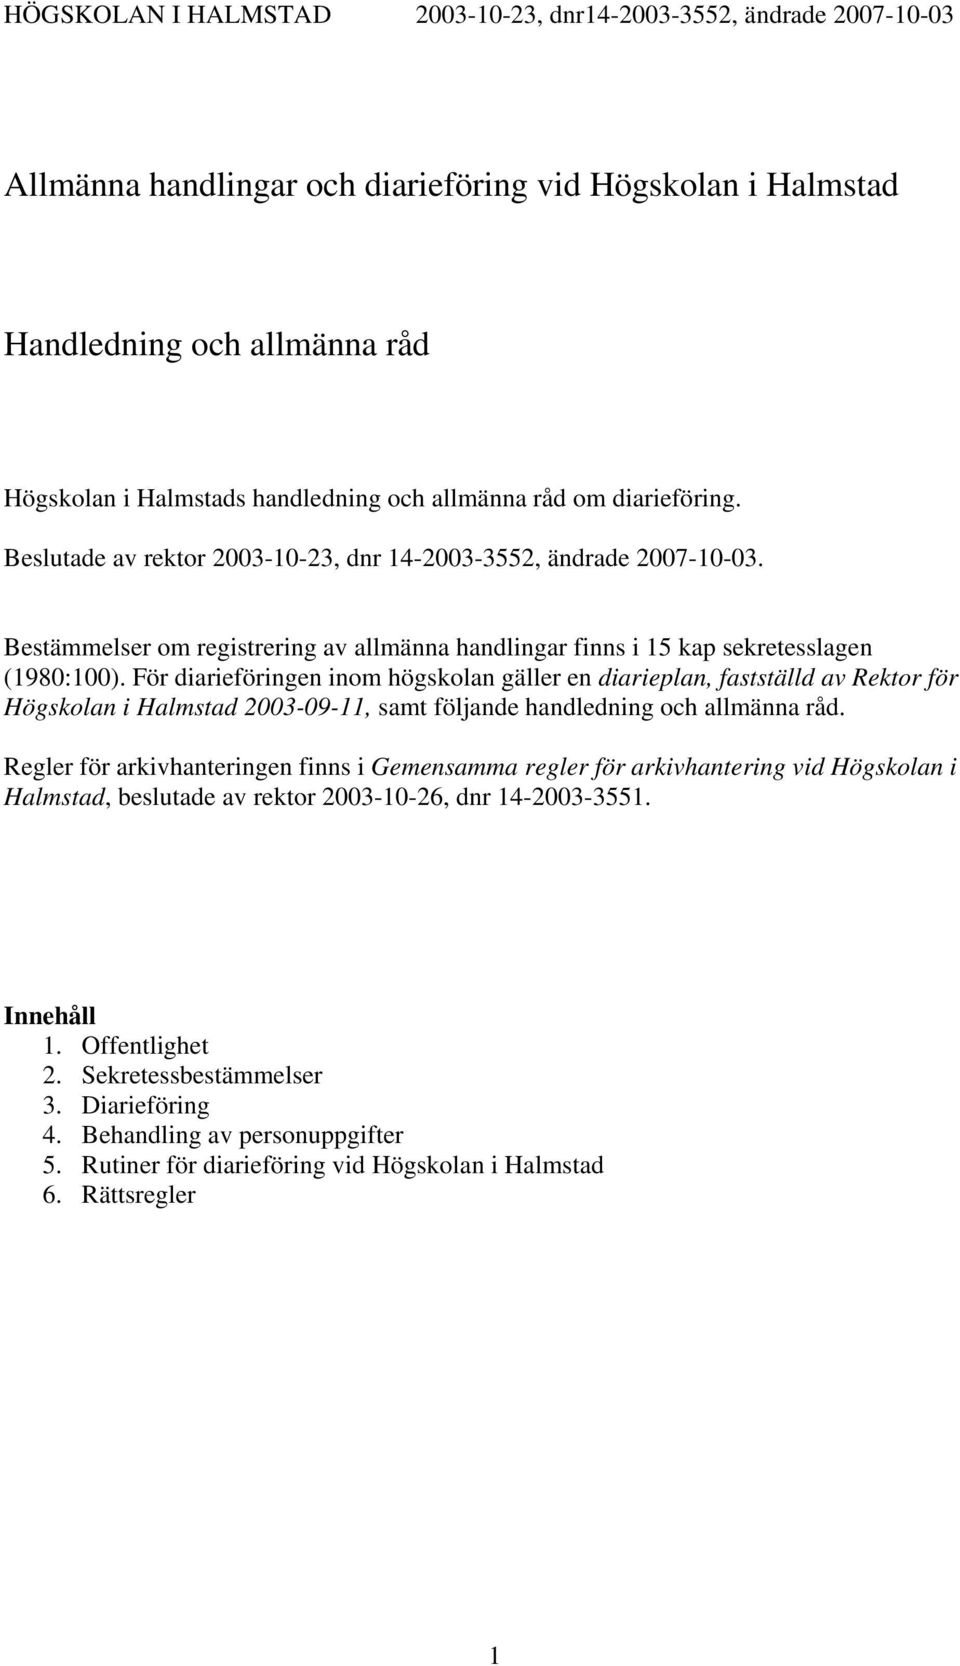 För diarieföringen inom högskolan gäller en diarieplan, fastställd av Rektor för Högskolan i Halmstad 2003-09-11, samt följande handledning och allmänna råd.